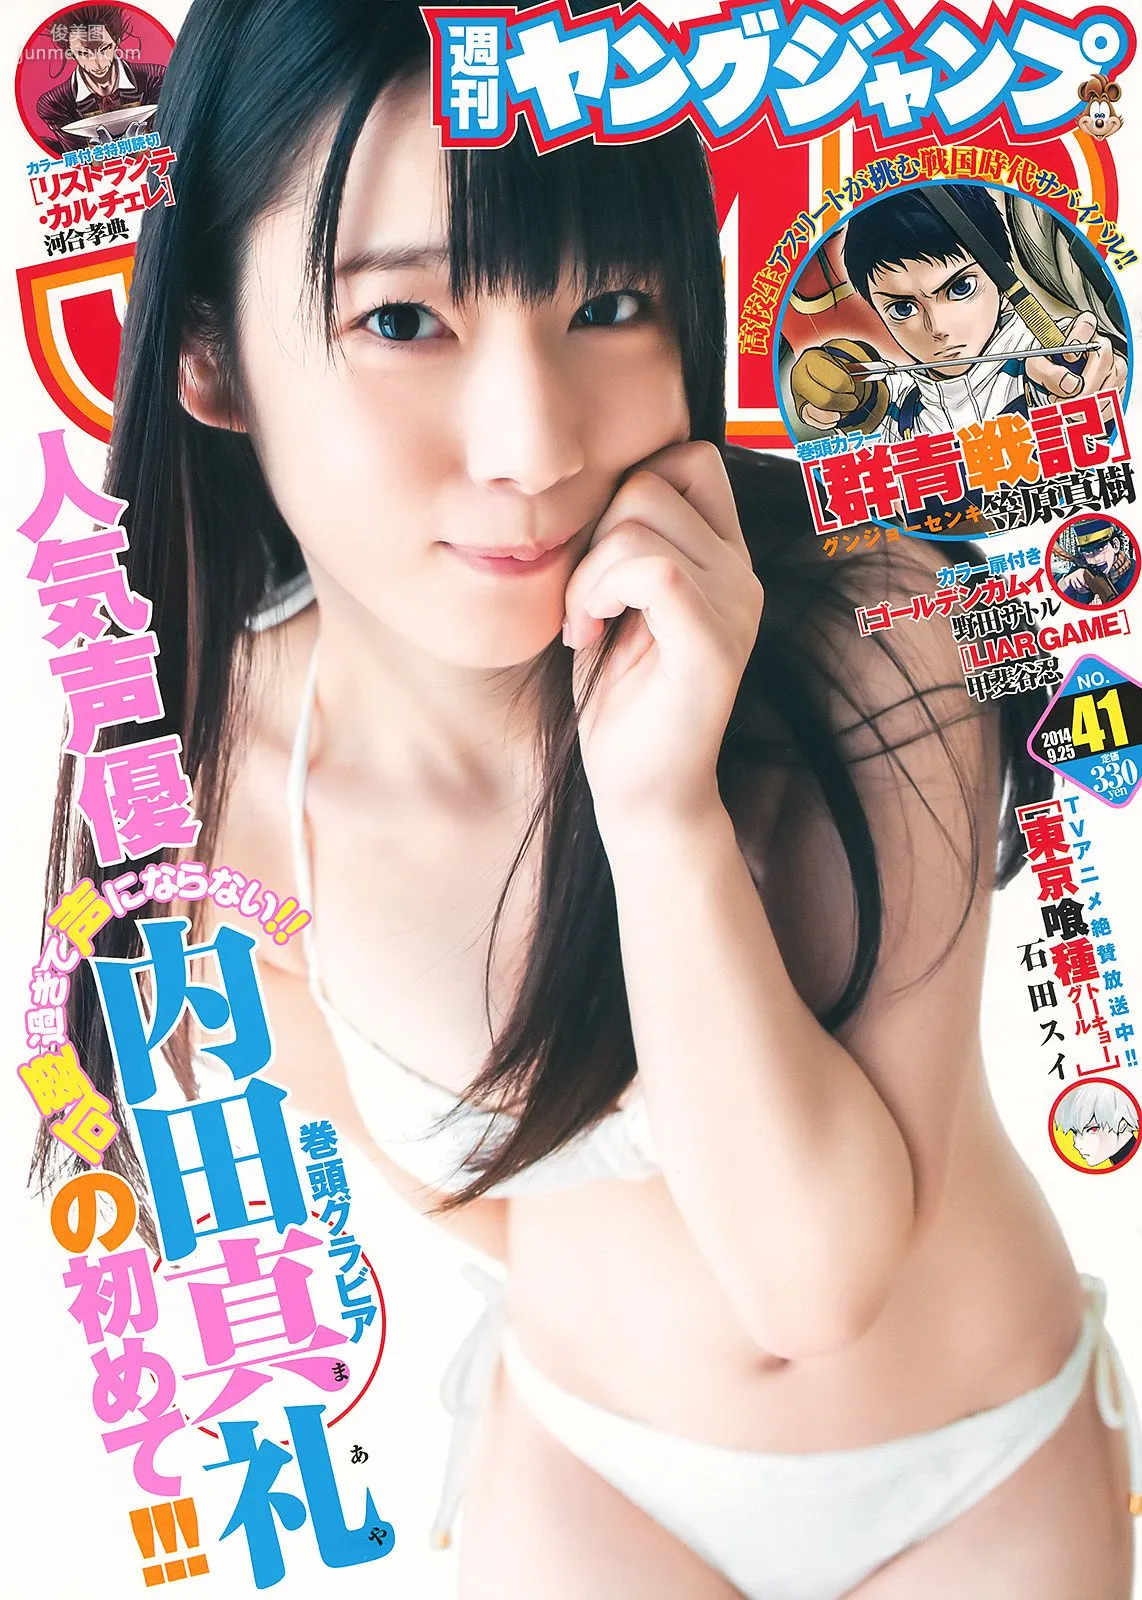 内田真礼 高松リナ [Weekly Young Jump] 2014年No.41 写真杂志1